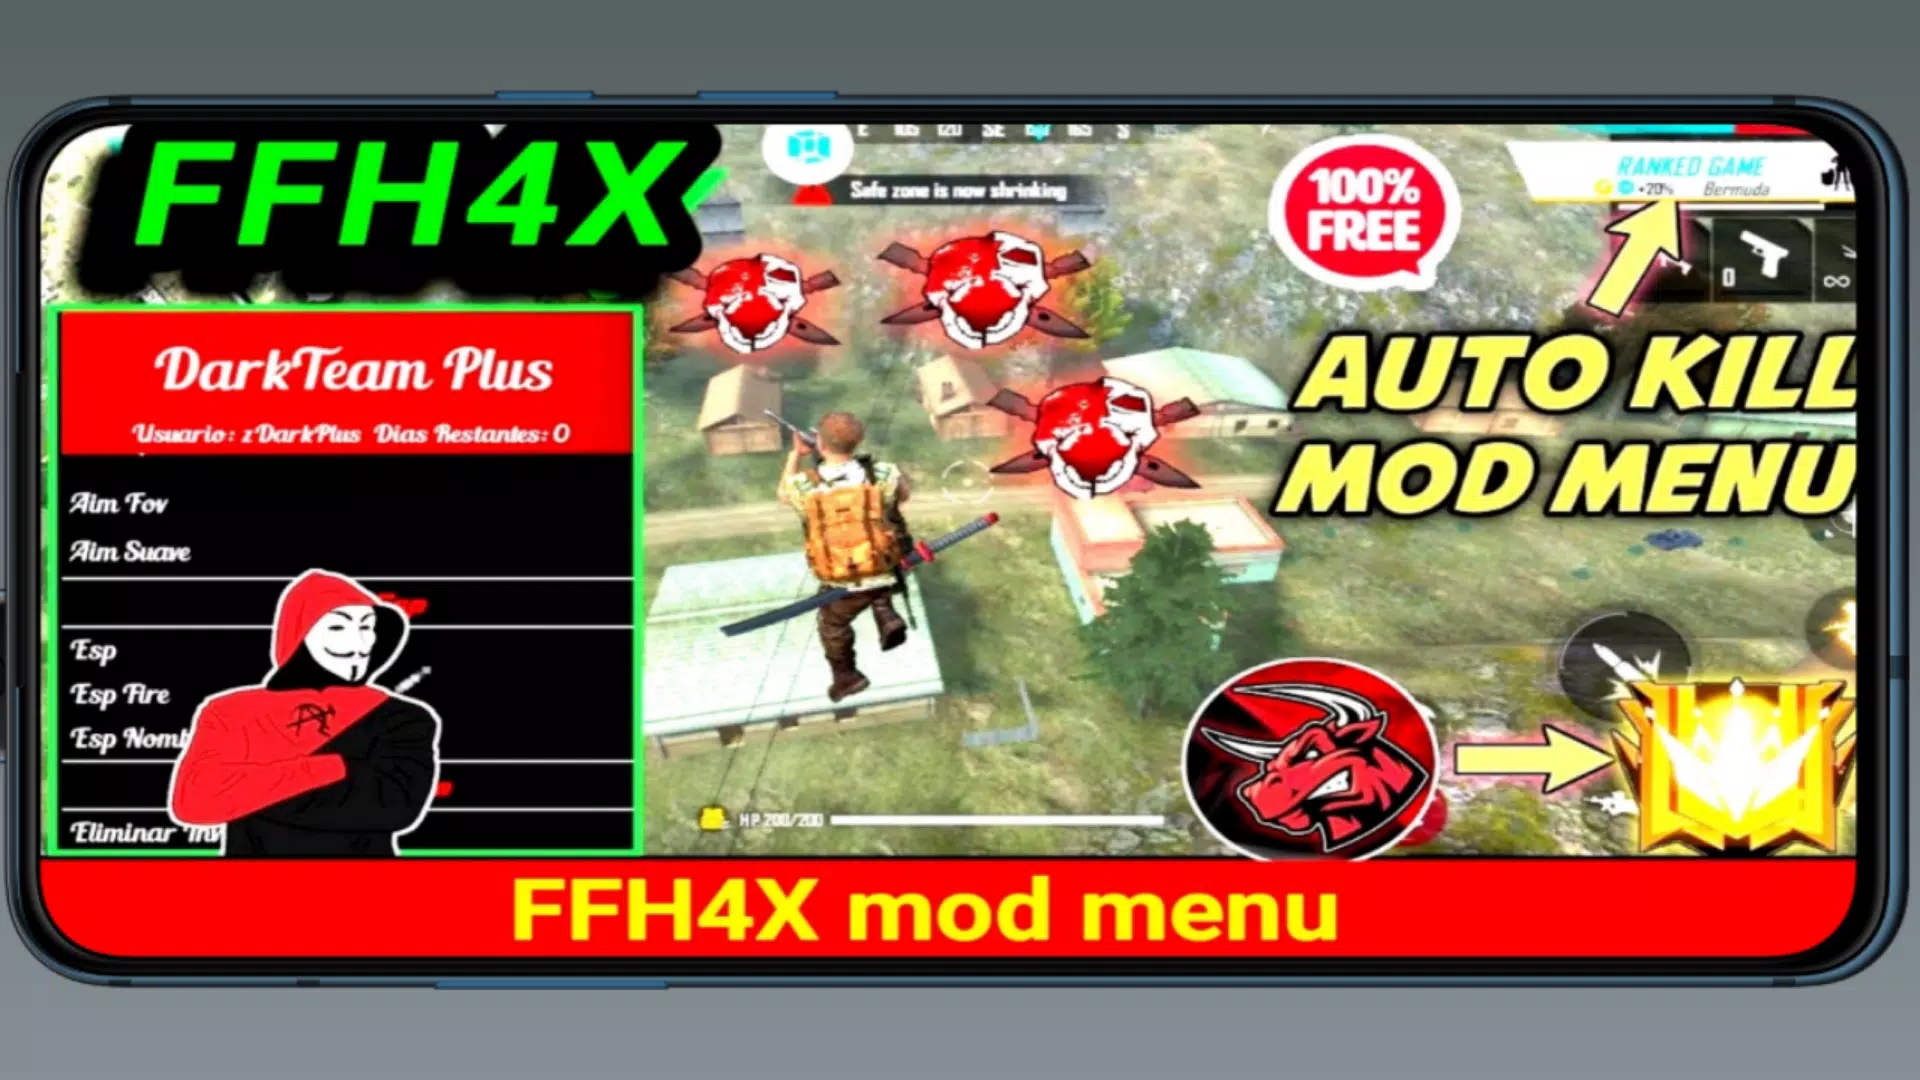 تحميل FFH4X Mod Menu Fire Hack FFH4 Free APK للاندرويد